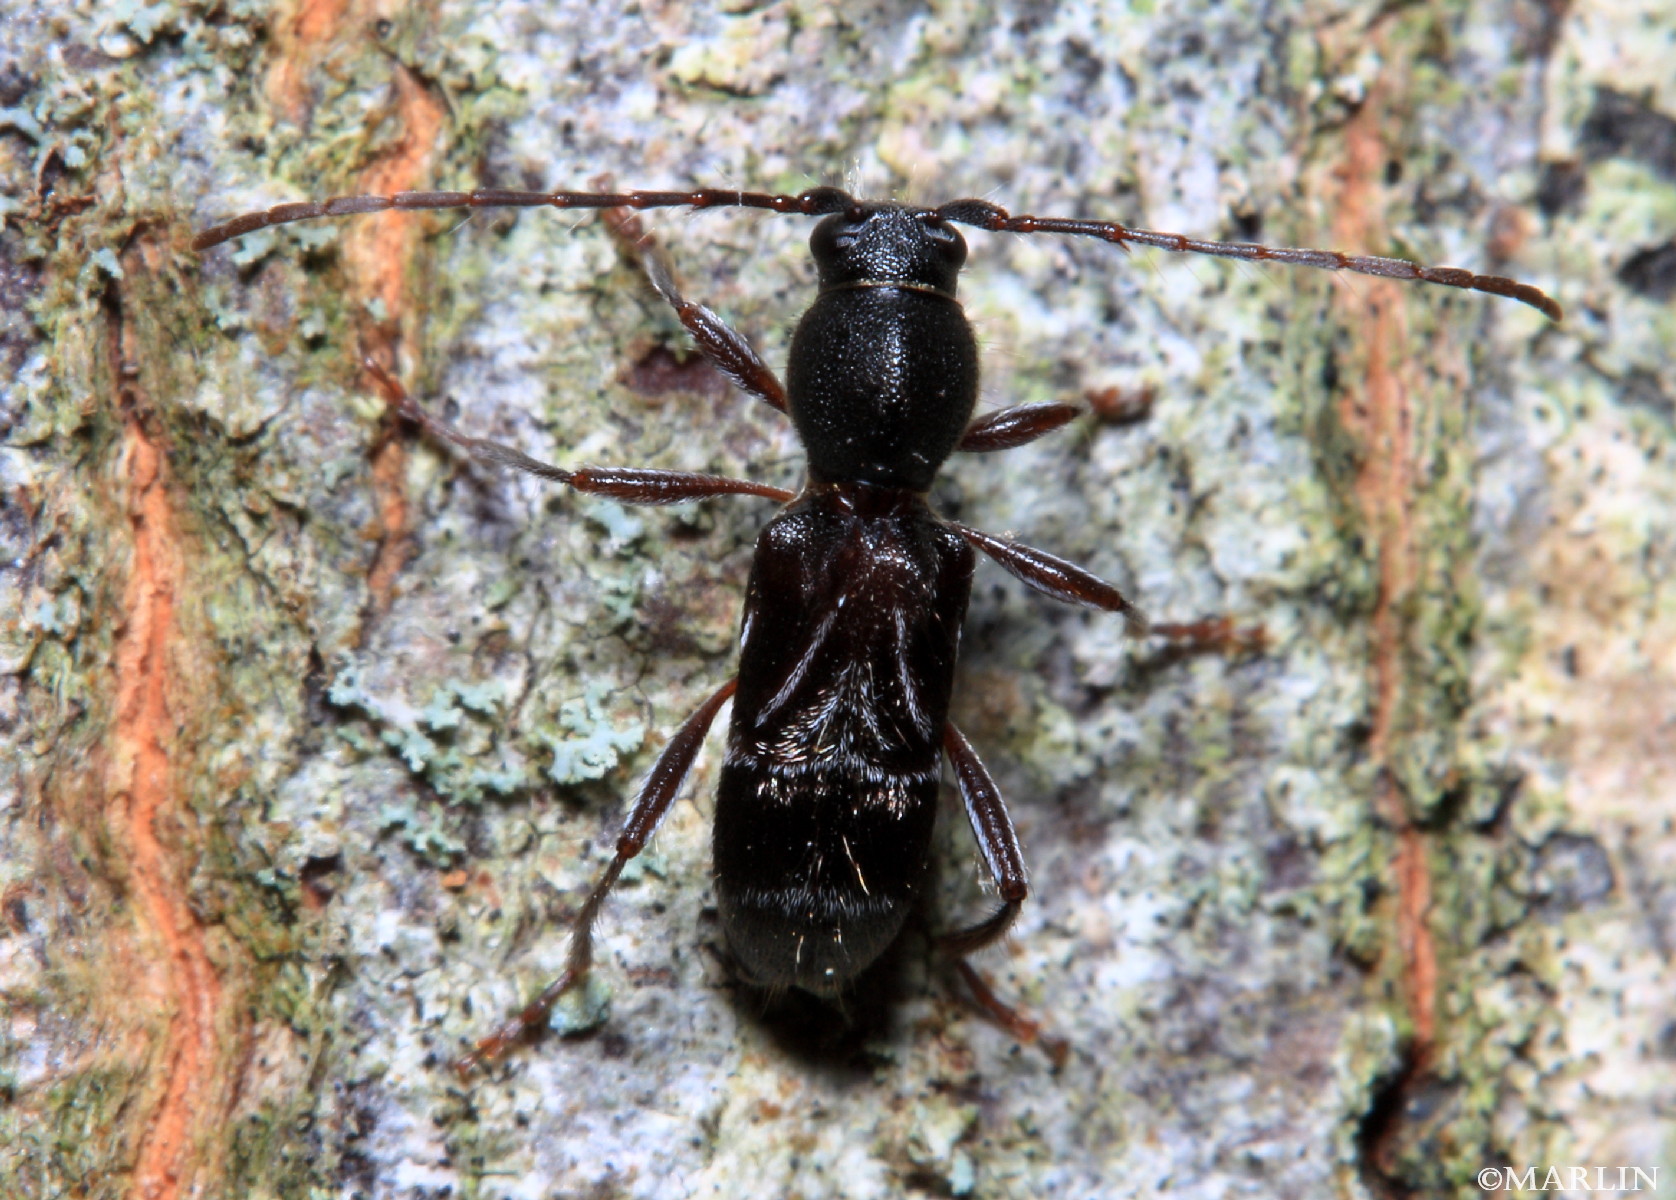 color photo Longhorned Beetle - Cyrtophorus verrucosus dorsal view